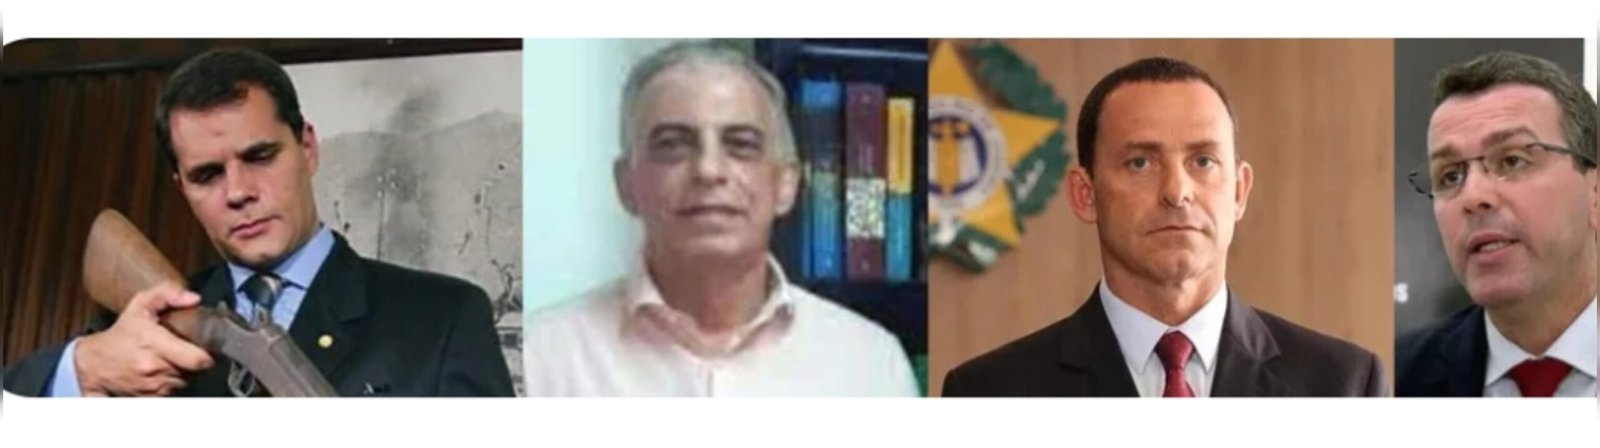 Desde 2008, 4 ex-chefes de Polícia Civil do RJ foram presos; entenda